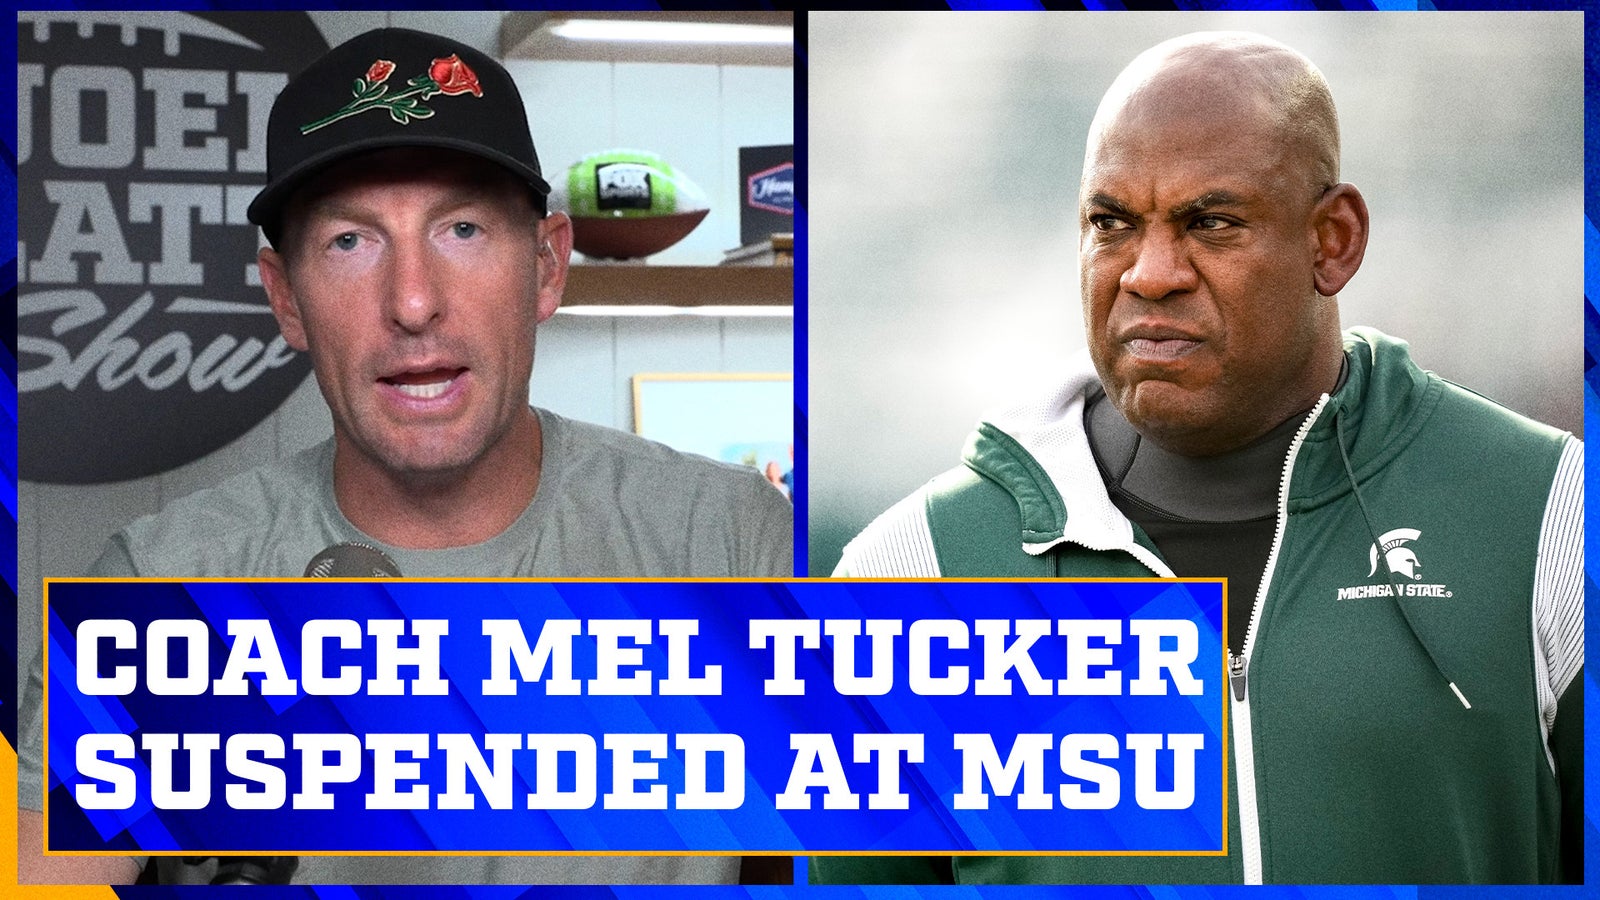 Michigan State head coach Mel Tucker has been suspended | Joel Klatt Show